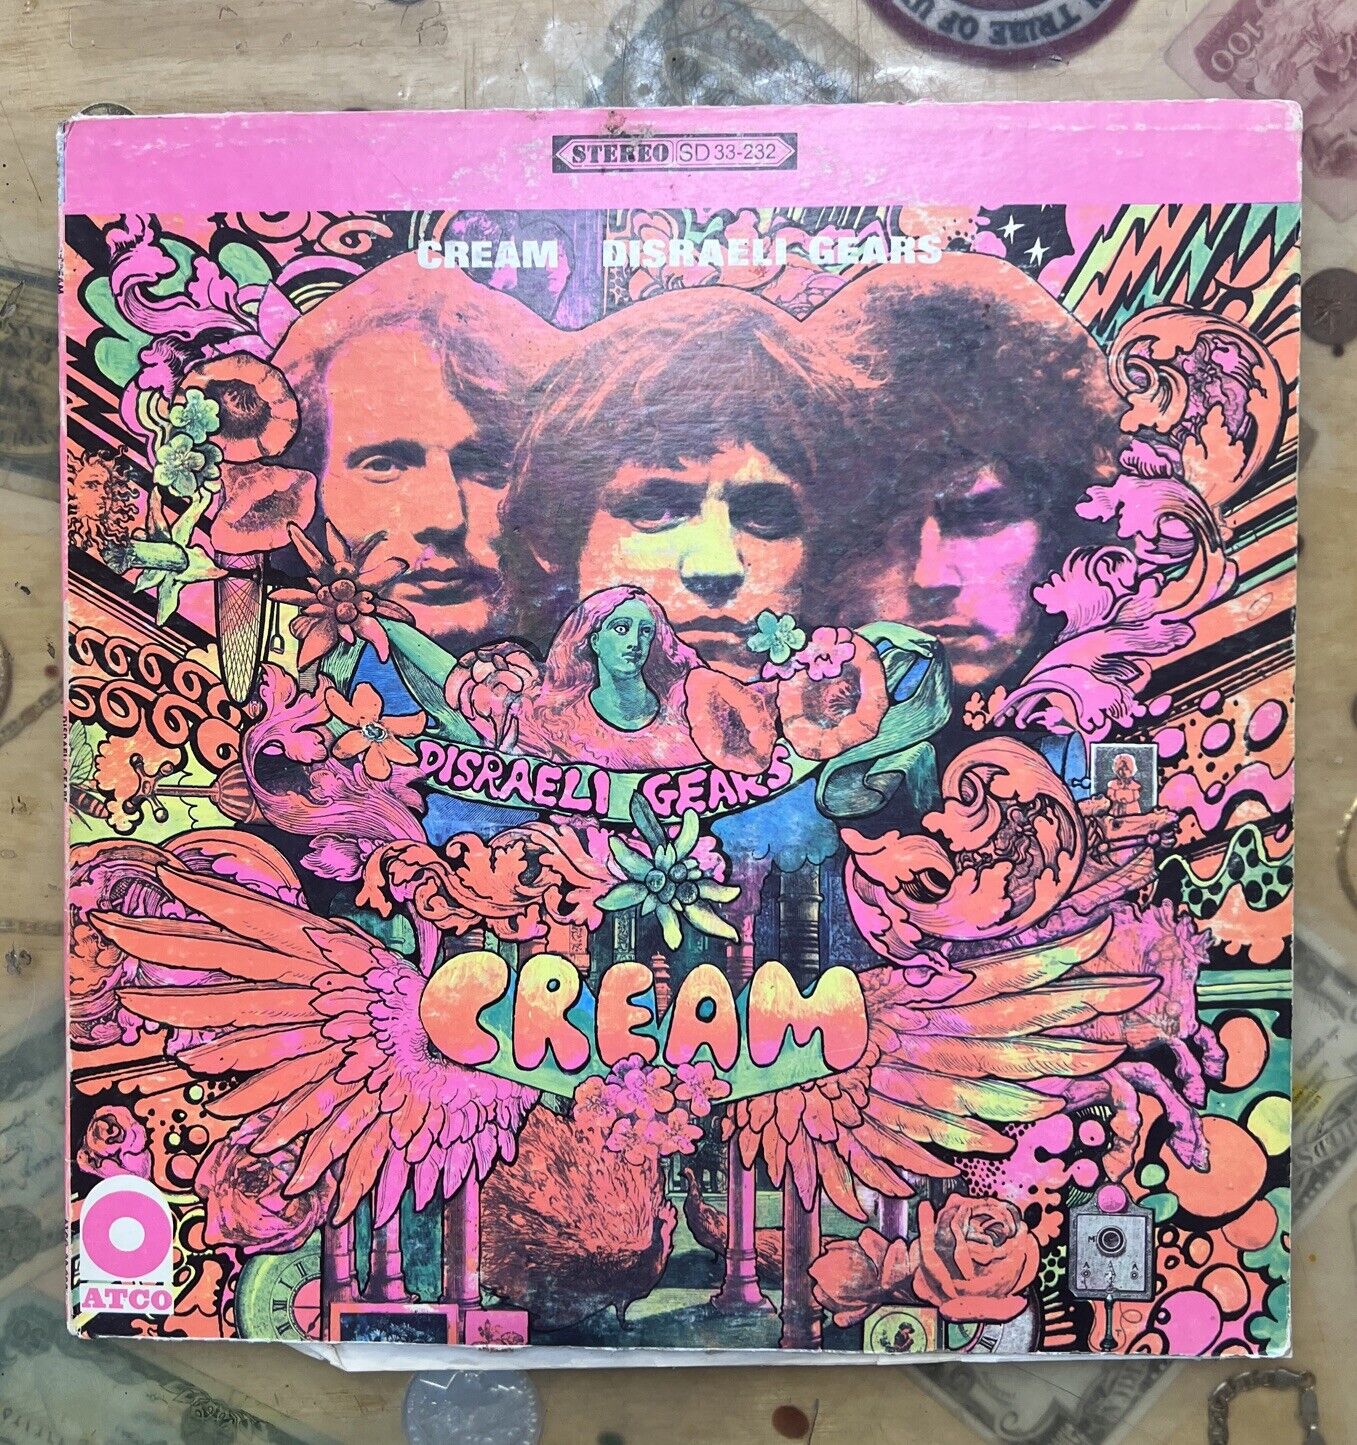 CREAM - DISRAELI GEARS (VINYL LP)  1967 Atco Records Stereo SD 33-232